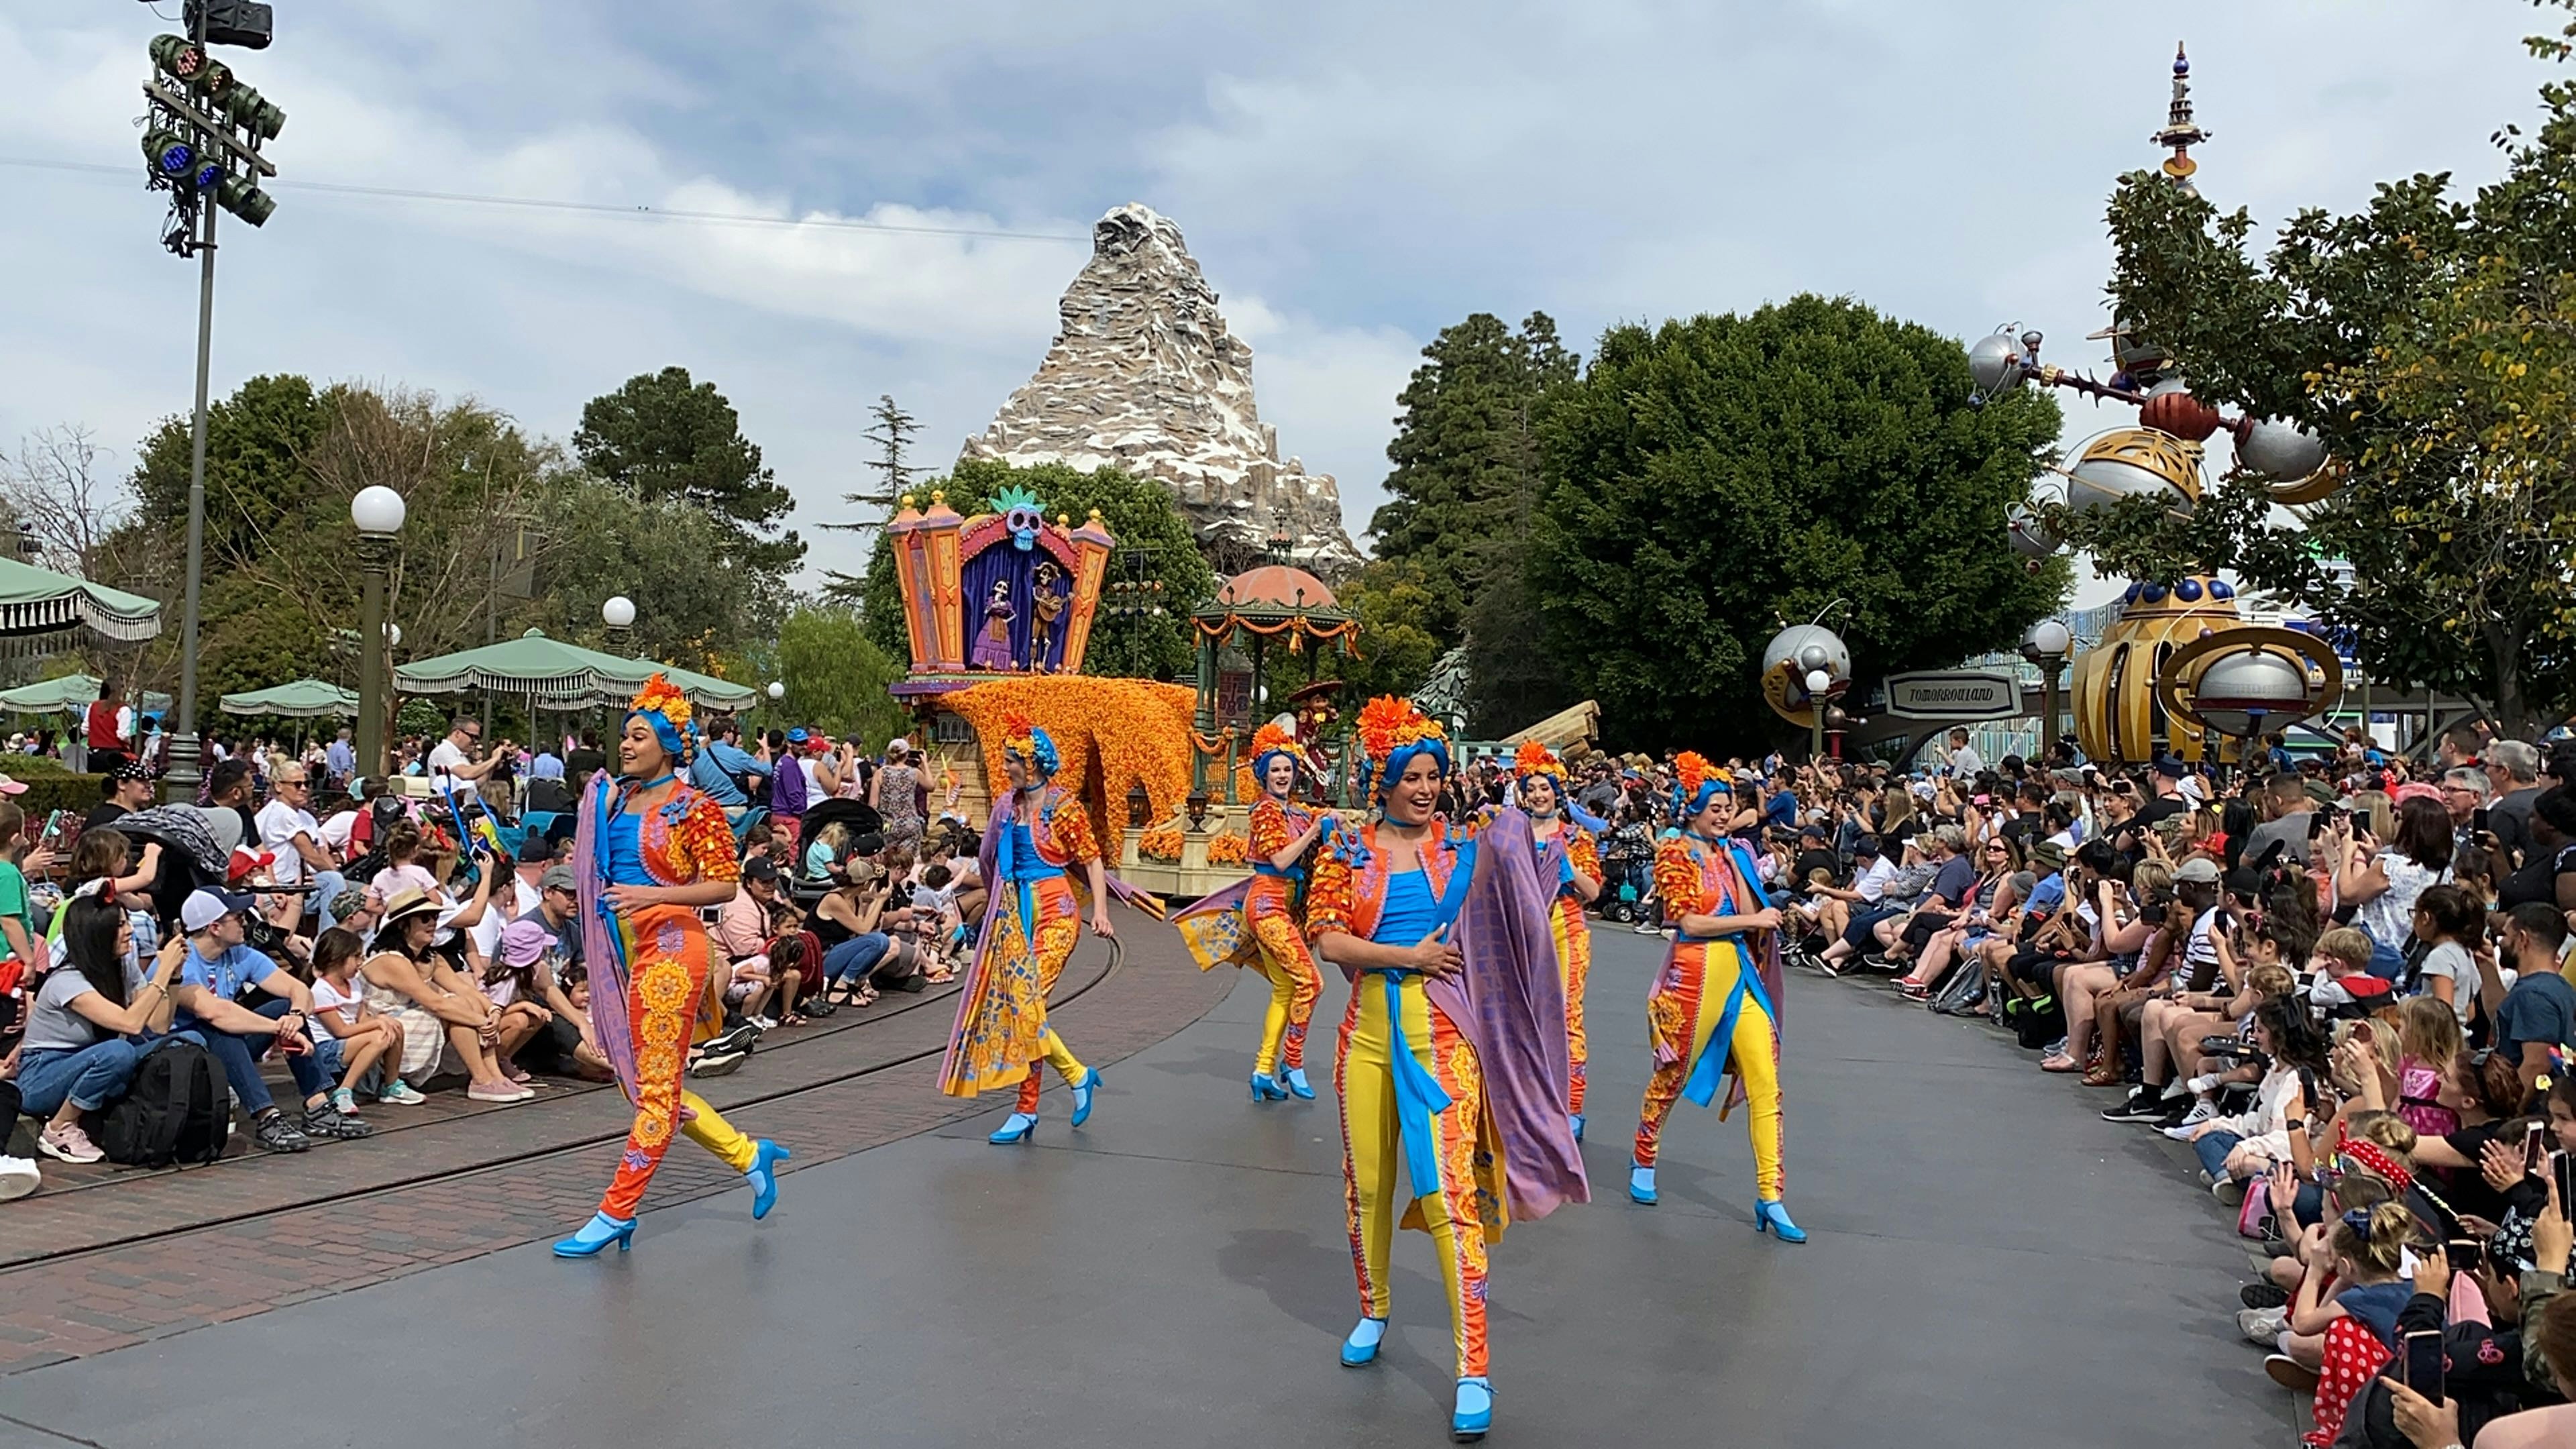 PHOTOS, VIDEO New "Magic Happens" Parade Debuts at Disneyland